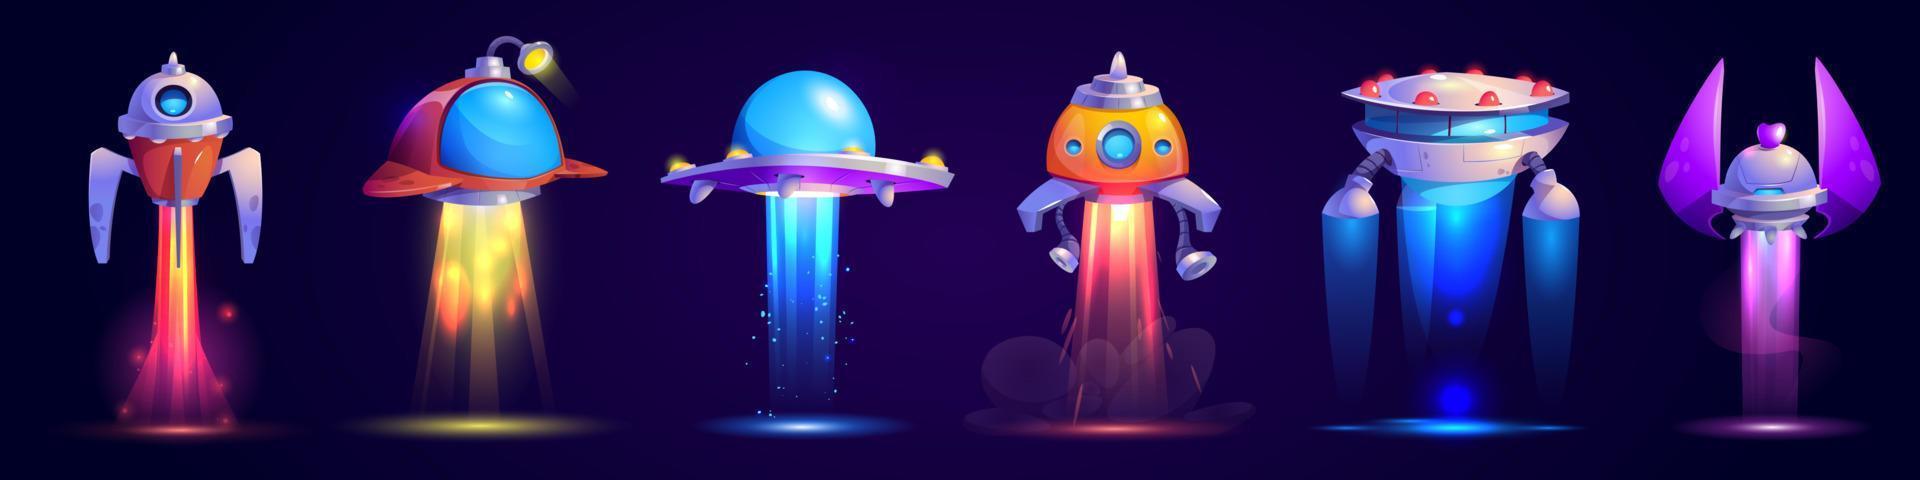 nave espacial alienígena, juego de vectores de iconos de juego de ovnis voladores.